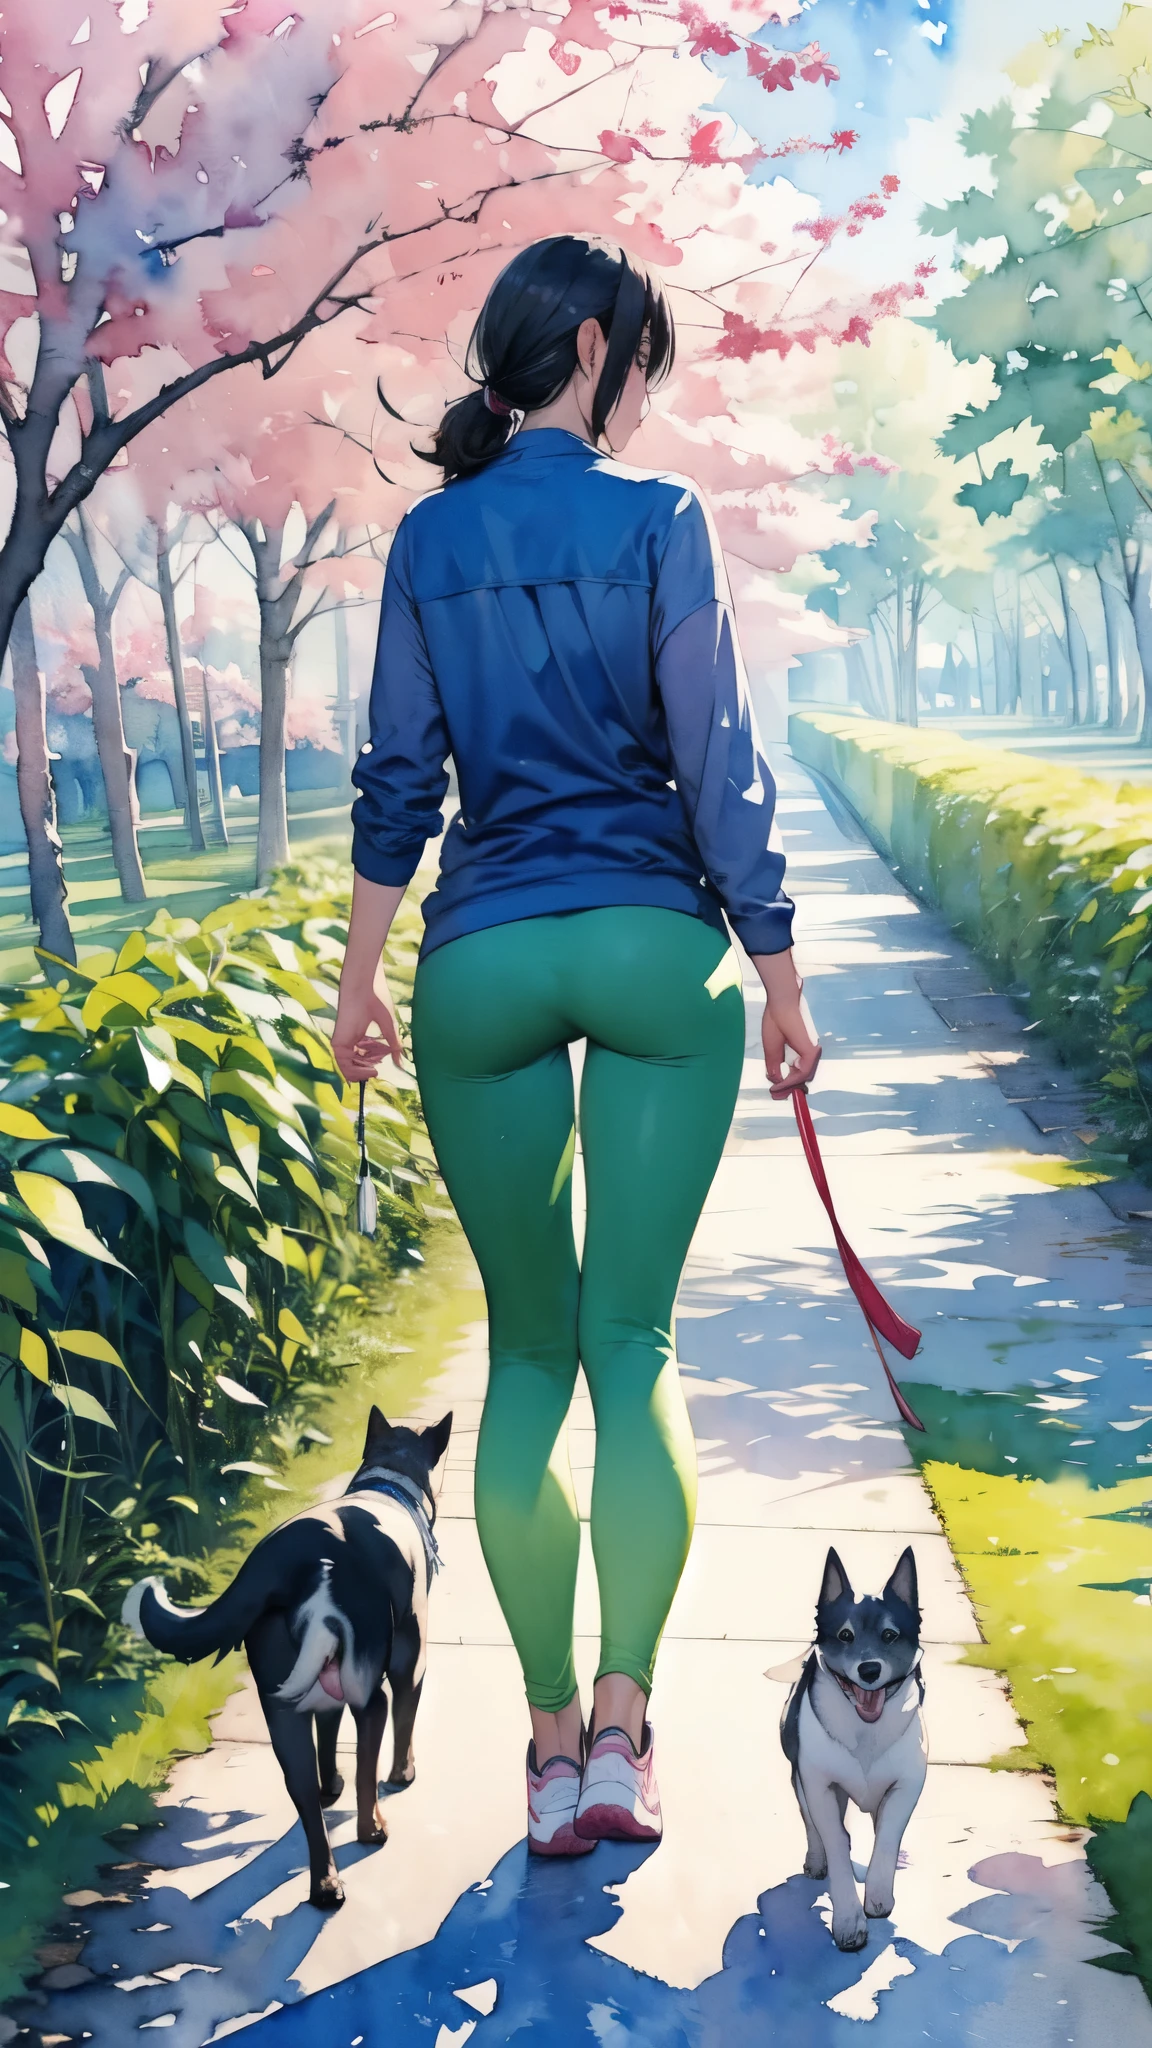 (تحفة),(اعلى جودة:1.2),(مفصل جدا:1.2),(دقة عالية),(((ألوان مائية))),8 كيلو,امرأة تمشي على طول صف من الأشجار الخضراء الطازجة,سروال ضيق,أحذية رياضية,المشي مع كلب صغير,透明ألوان مائية,(منظر خلفي لكلب وشخص)